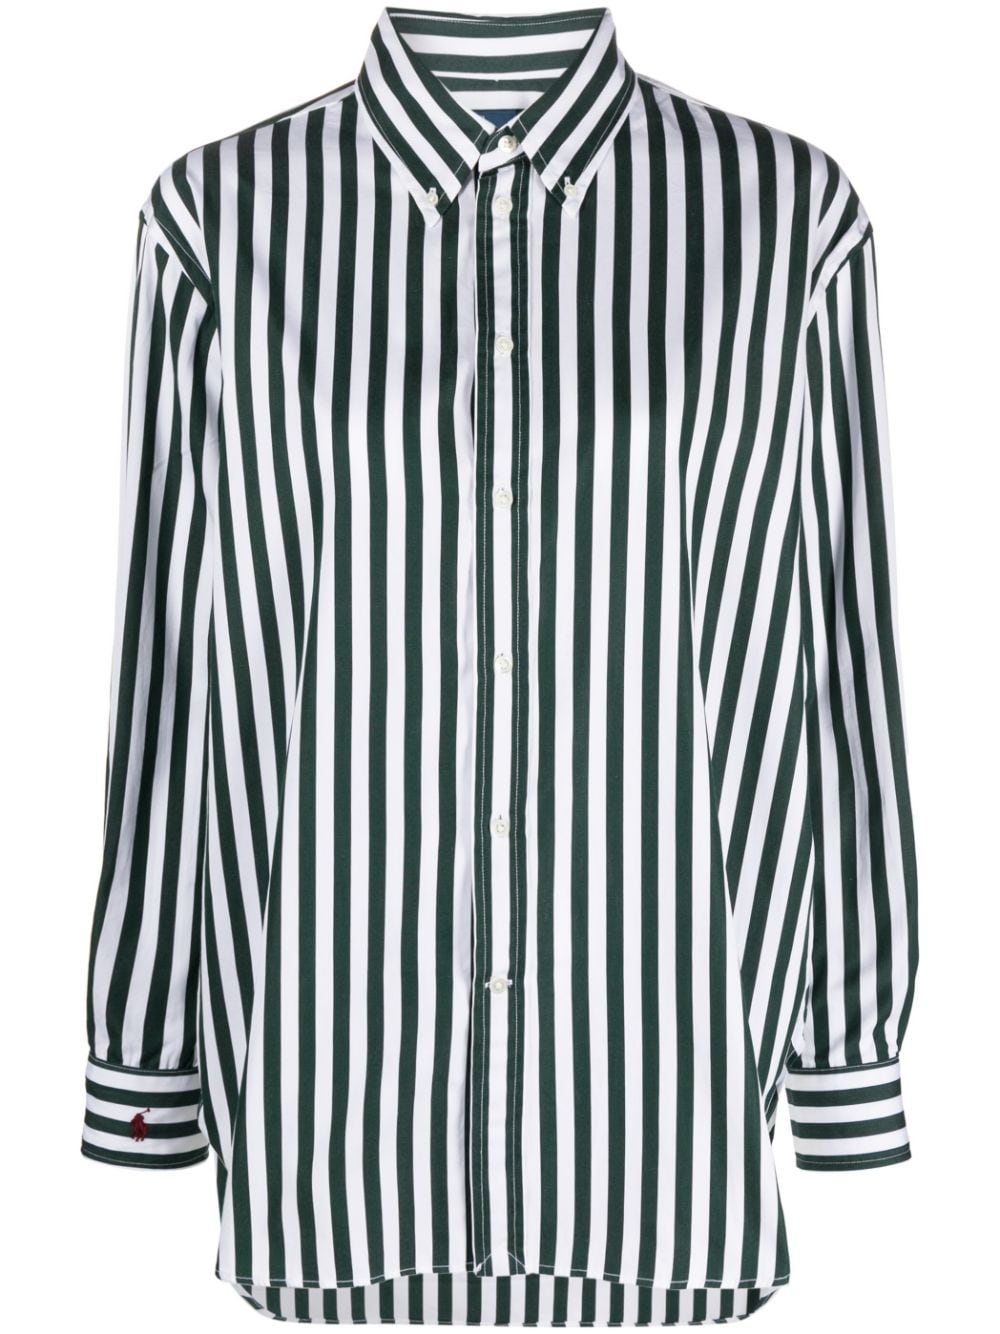 Polo Ralph Lauren long-sleeve striped shirt - Green von Polo Ralph Lauren